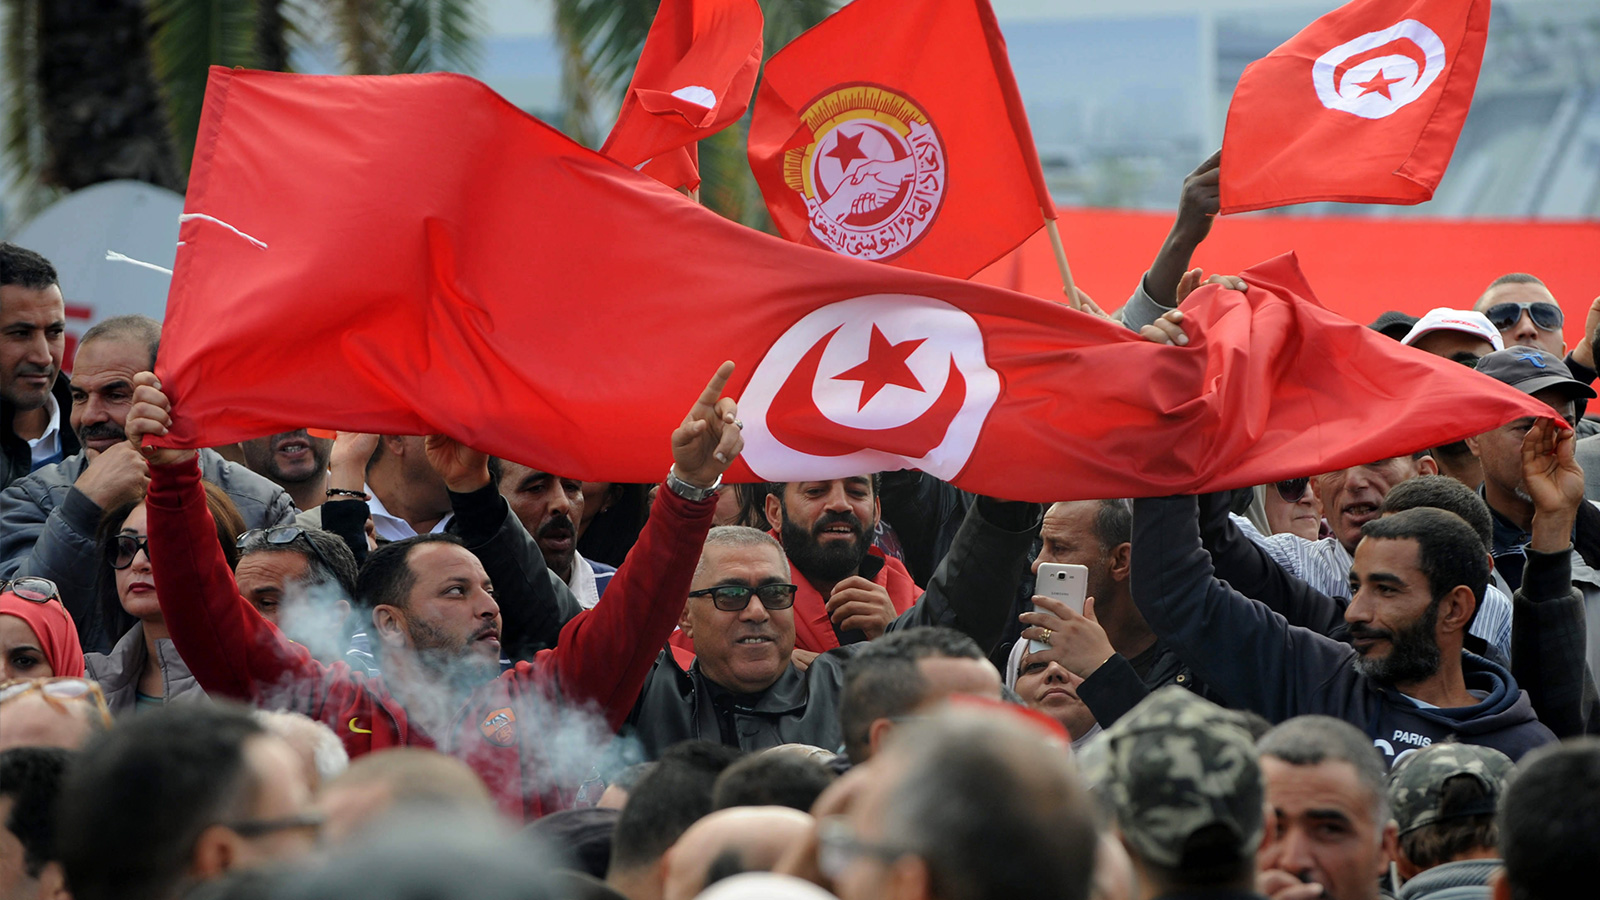 الوضع السياسي والاقتصادي في تونس ليس على ما يرام، هي وسائر بلاد الثورات العربية؛ فهل كان ما جرى حلما جميلا عشناه ذات شتاء، لينقلب المشهد، إلى حالة نقول فيها: ليت ما جرى قبل ثمانية أعوام ما كان